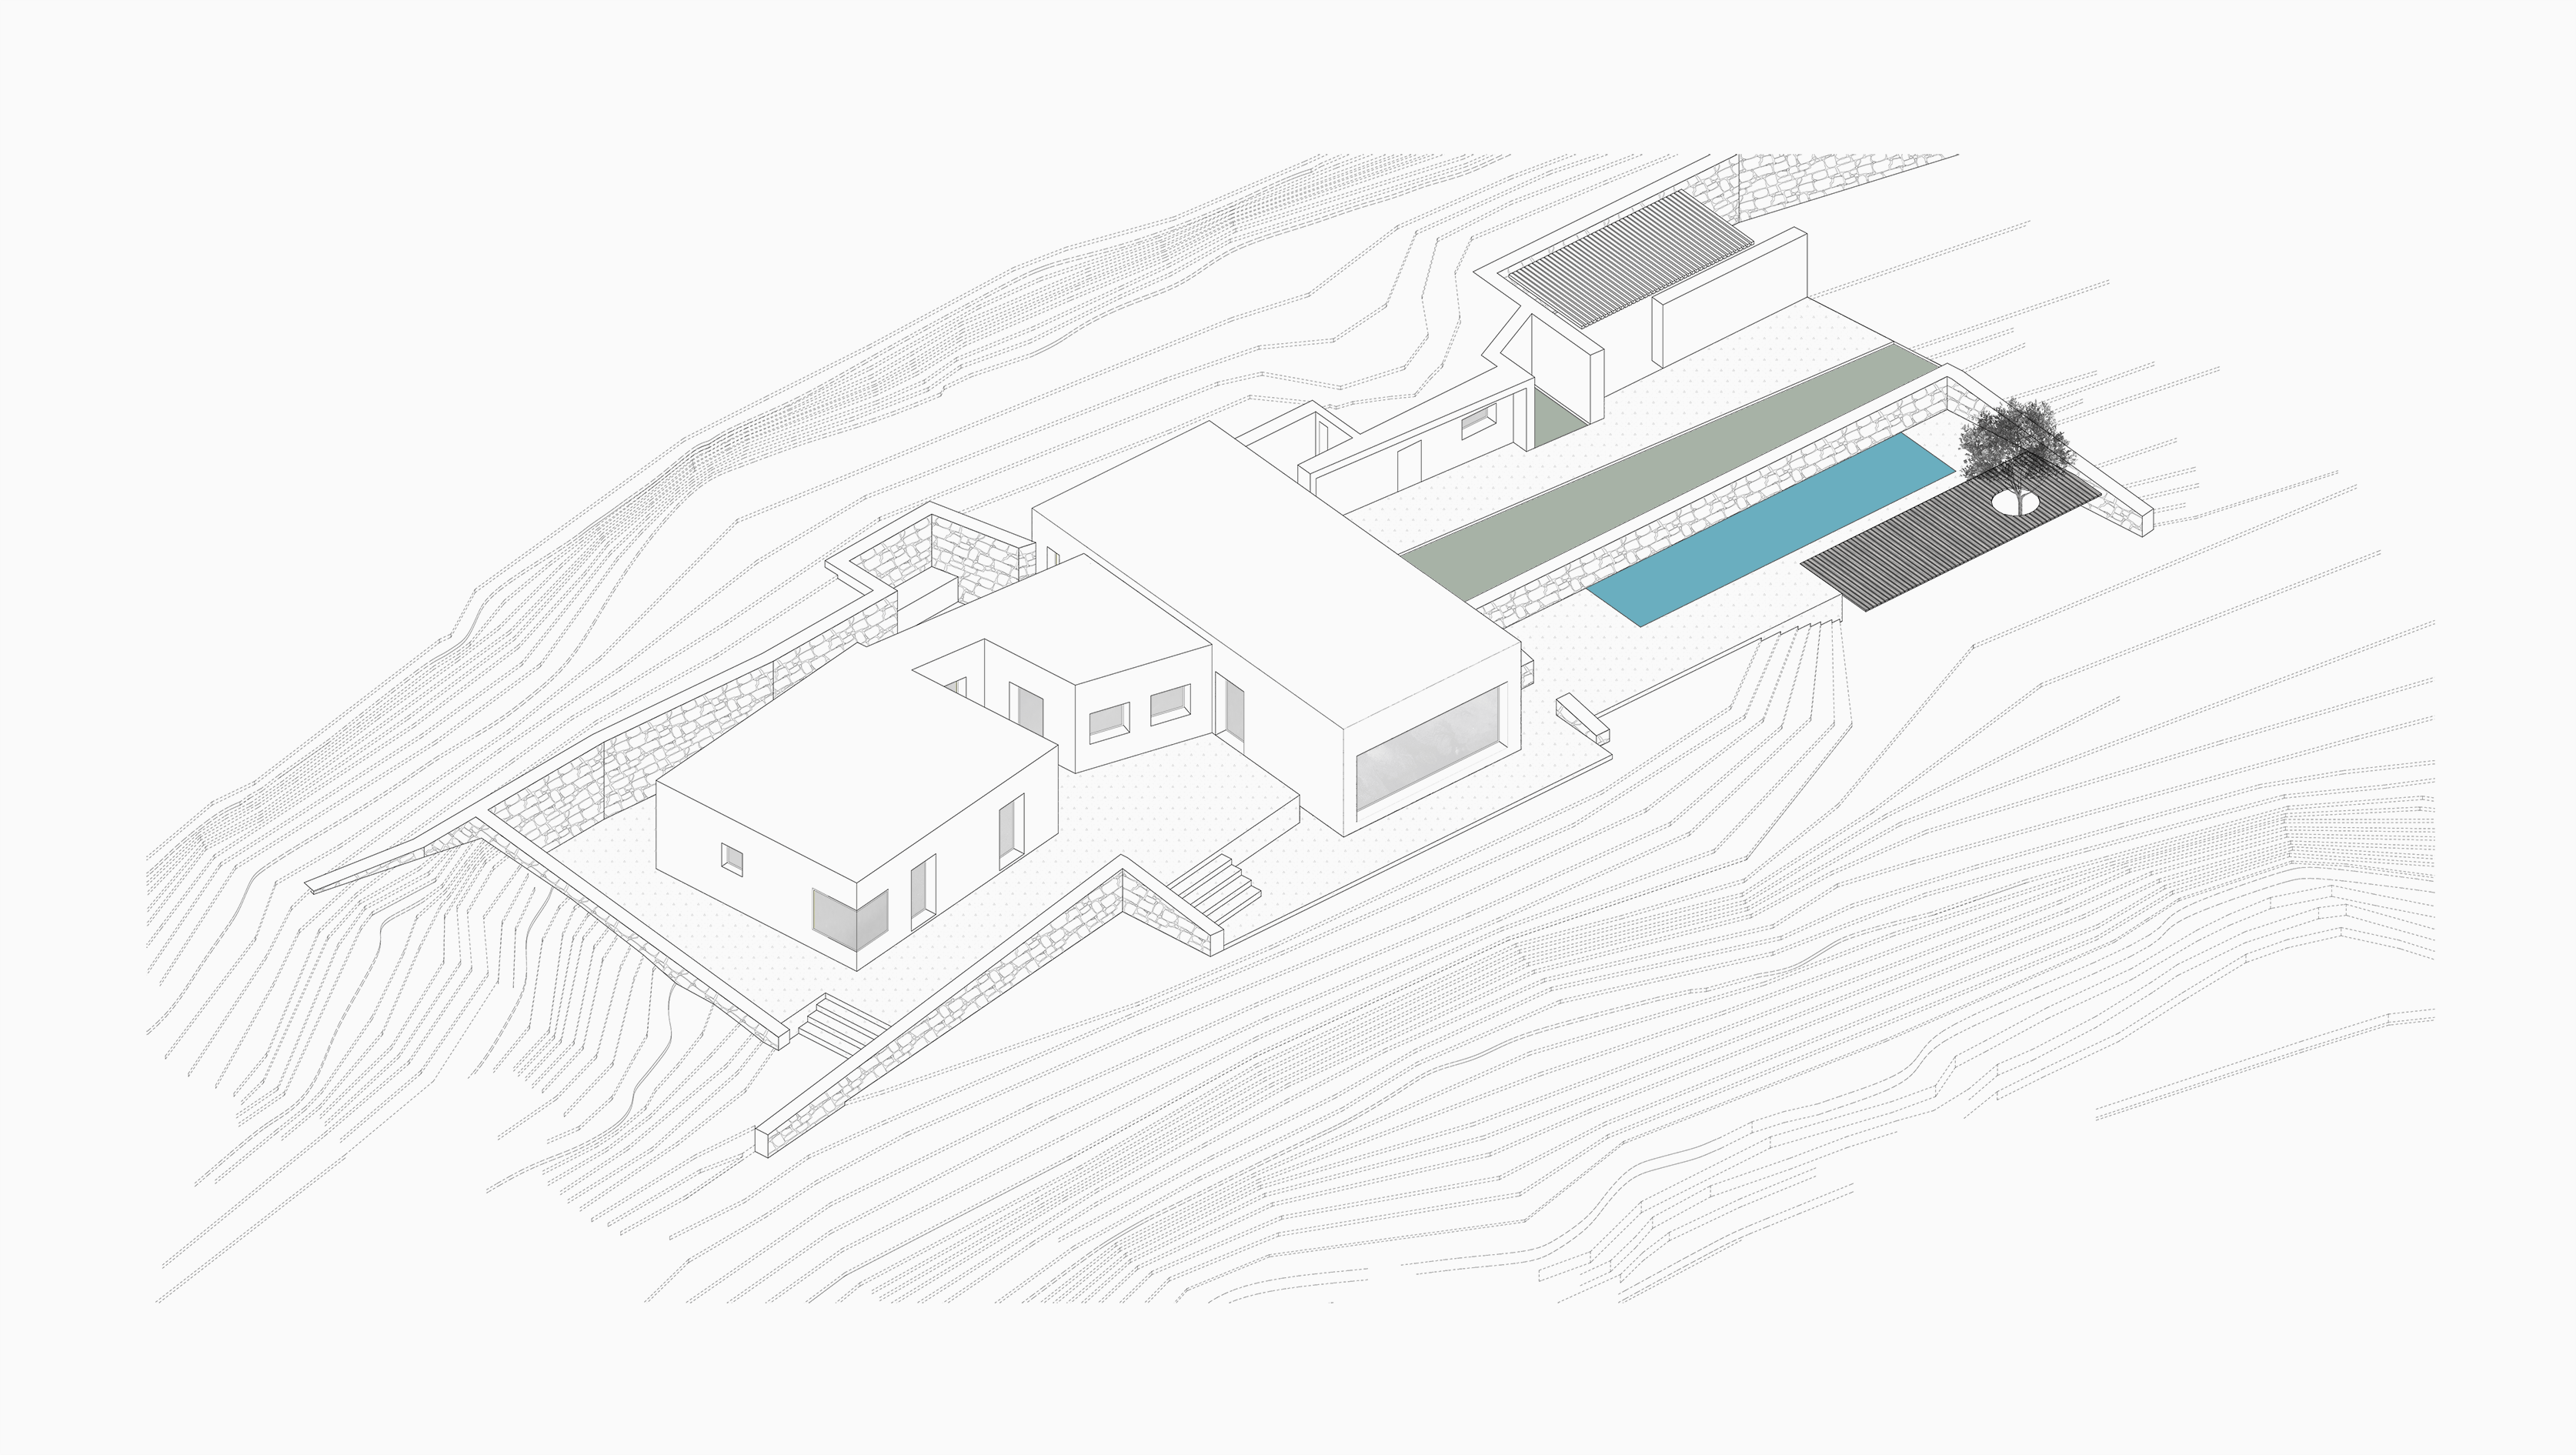 Evripiotis Architects-as-house-paros-evripiotis-architects-axonometric-view-new-AS House, Paros Island